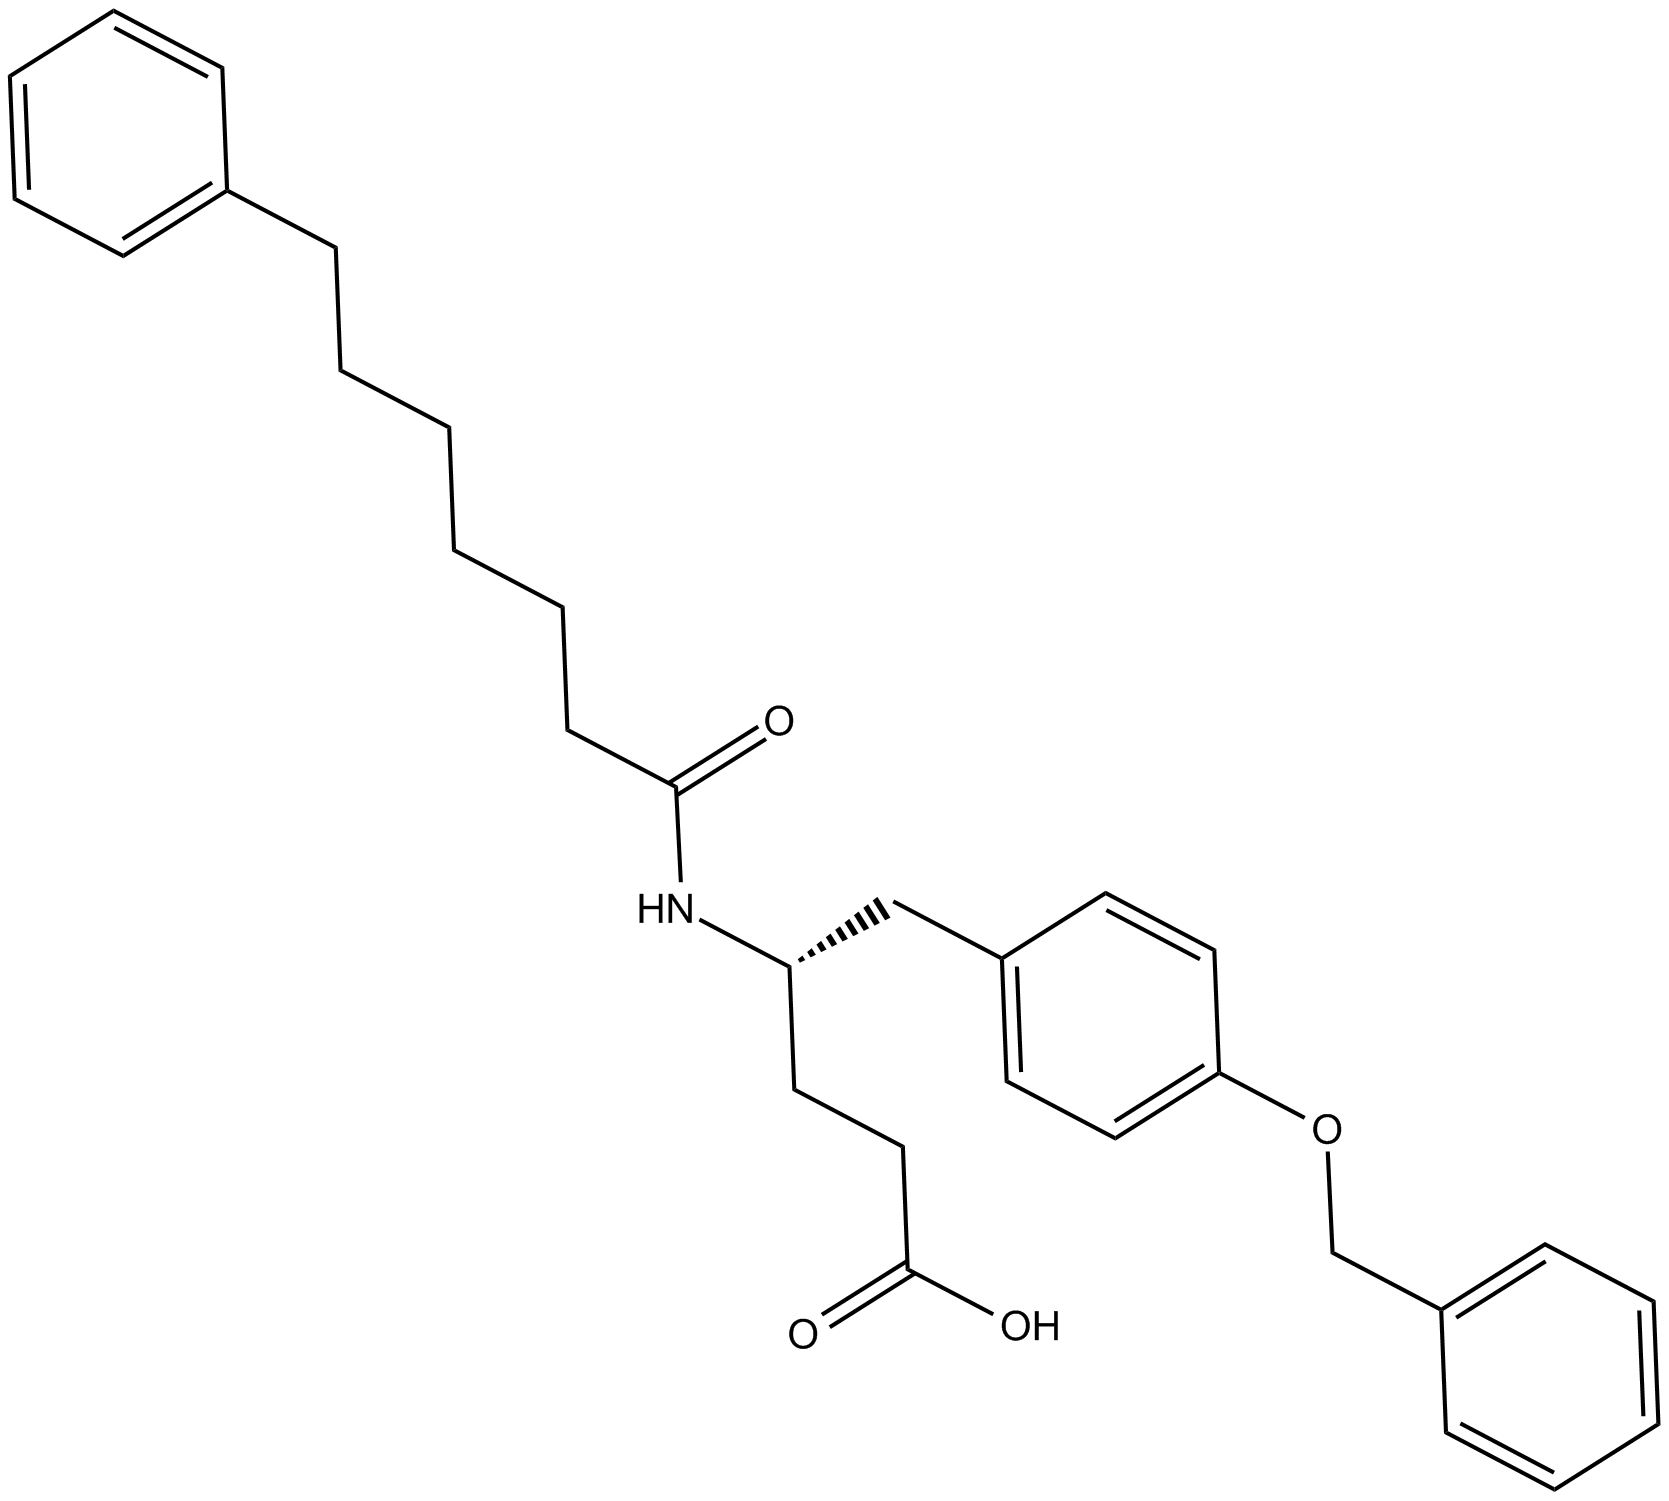 sPLA2 Inhibitor